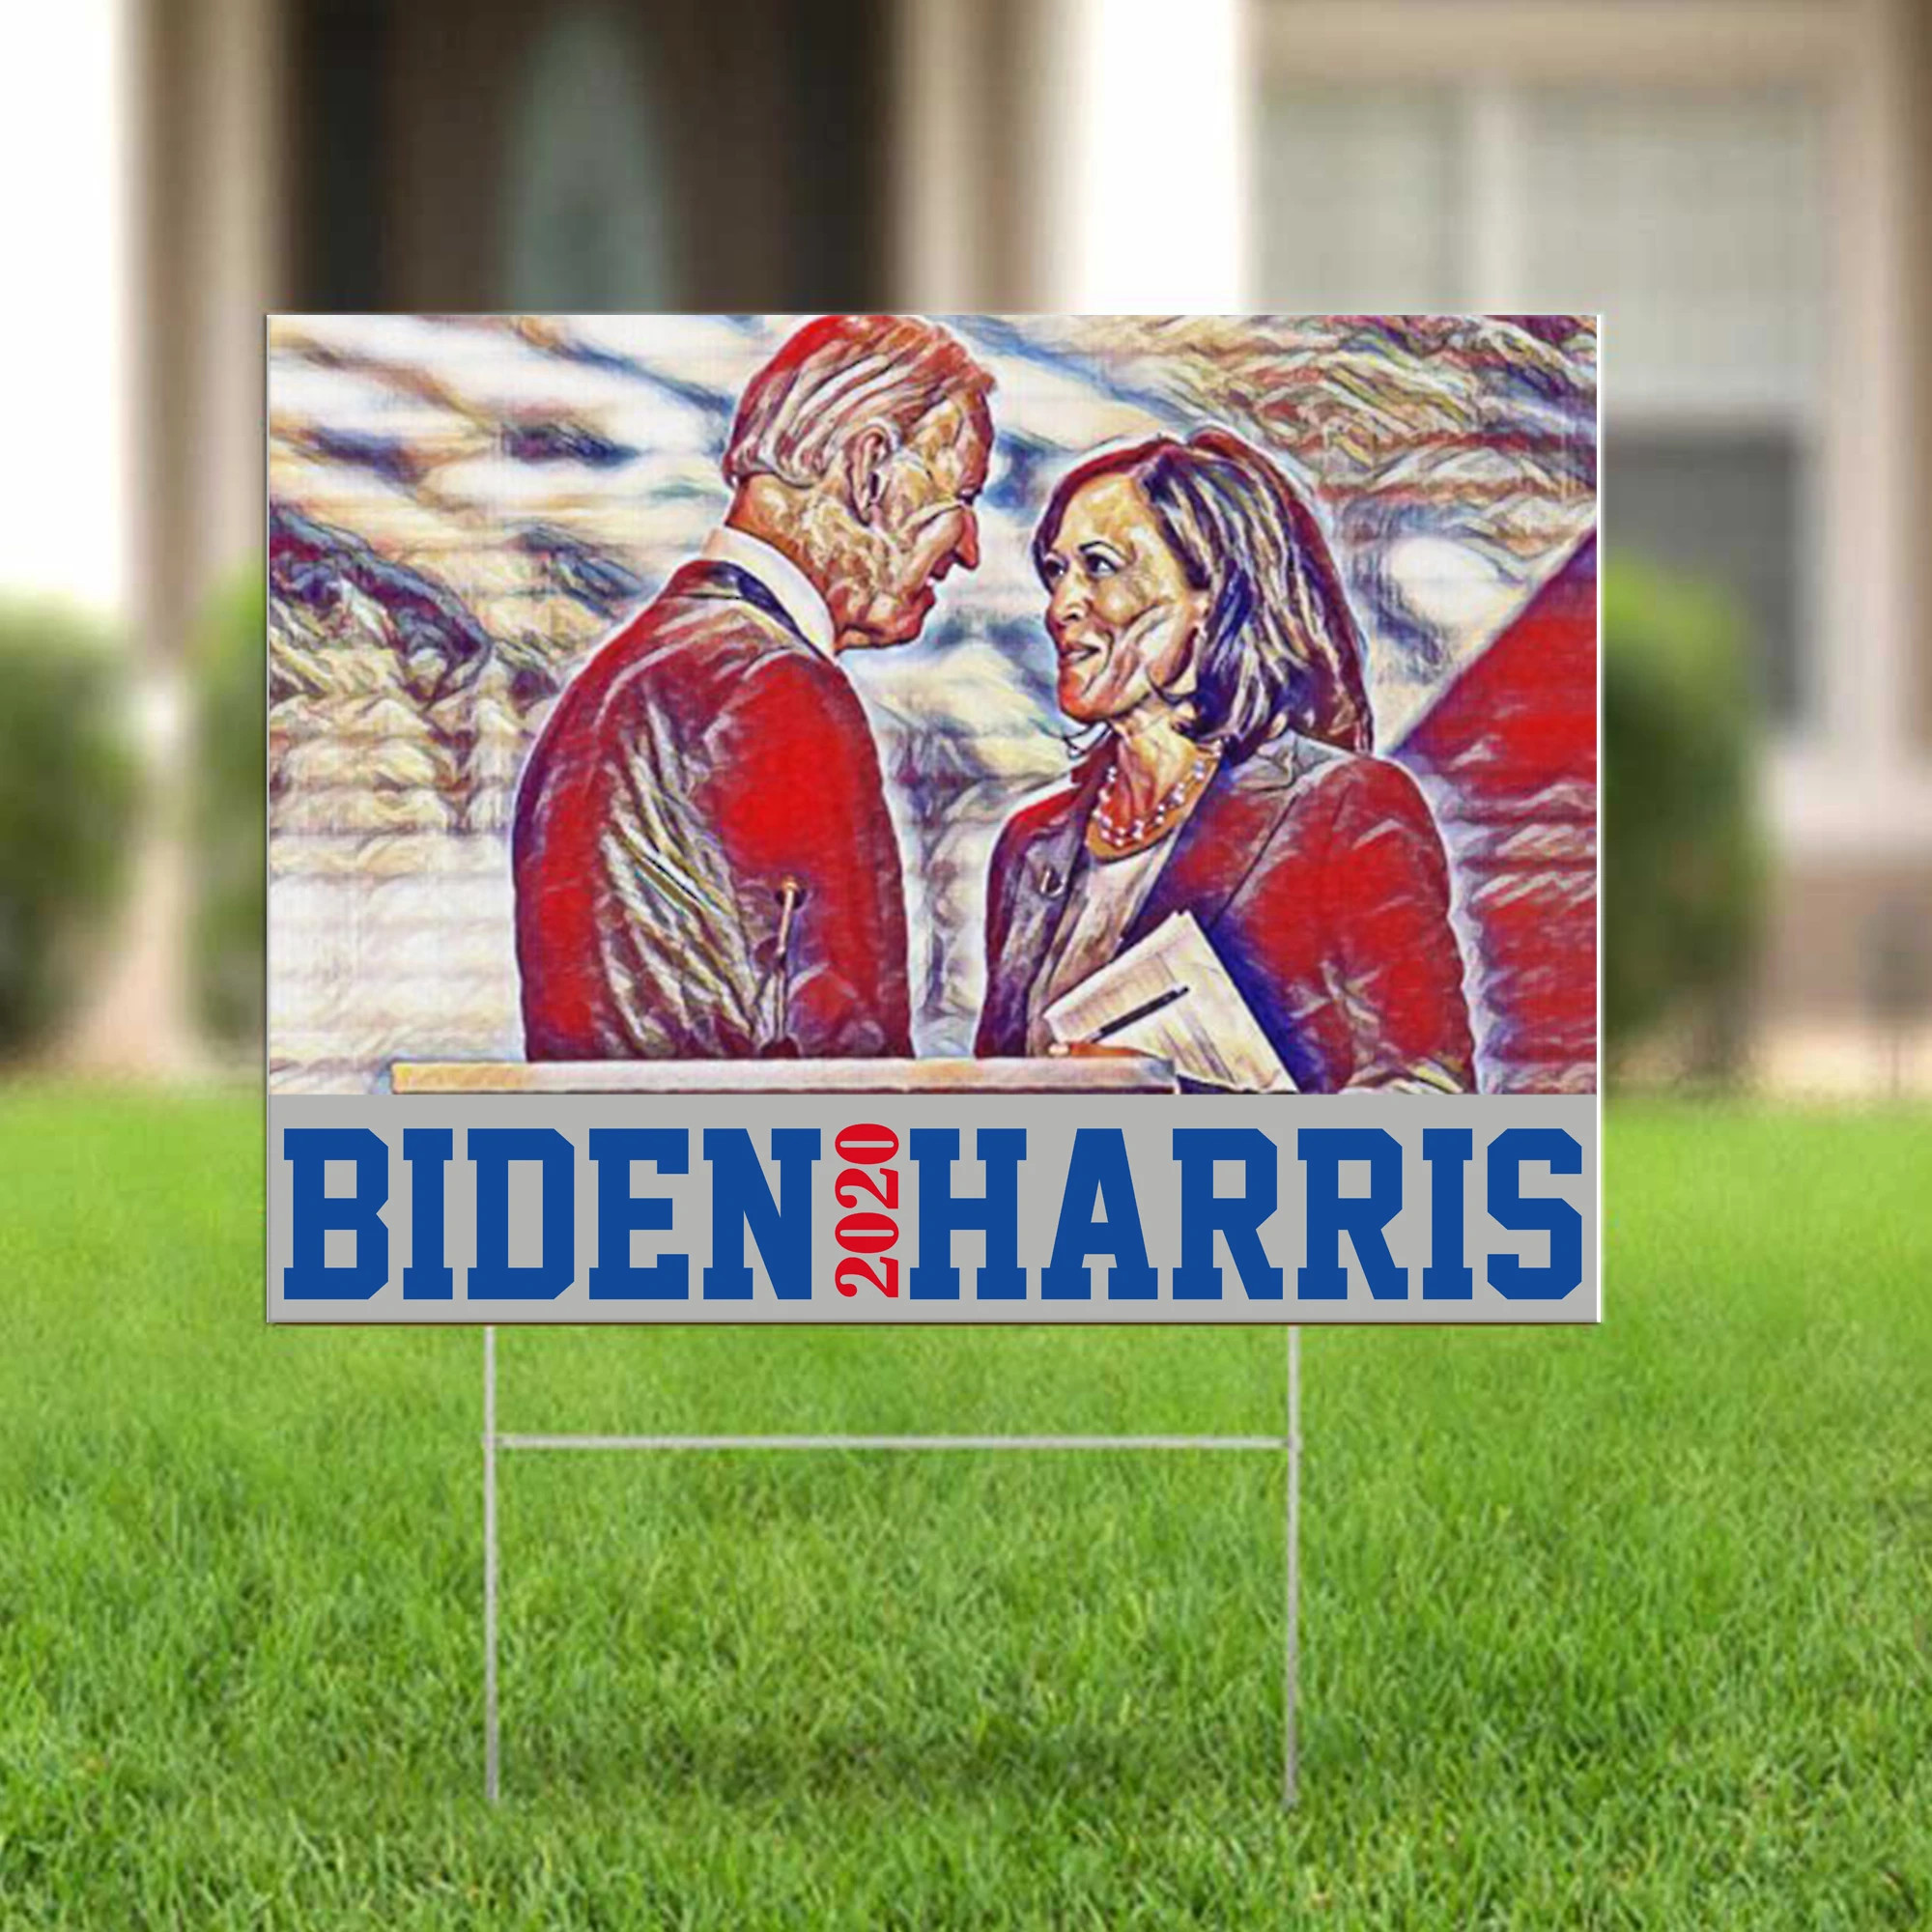 Biden Harris 2020 Yard Sign Nasty Woman Biden Run For President Liberal Voter Go On For Joe